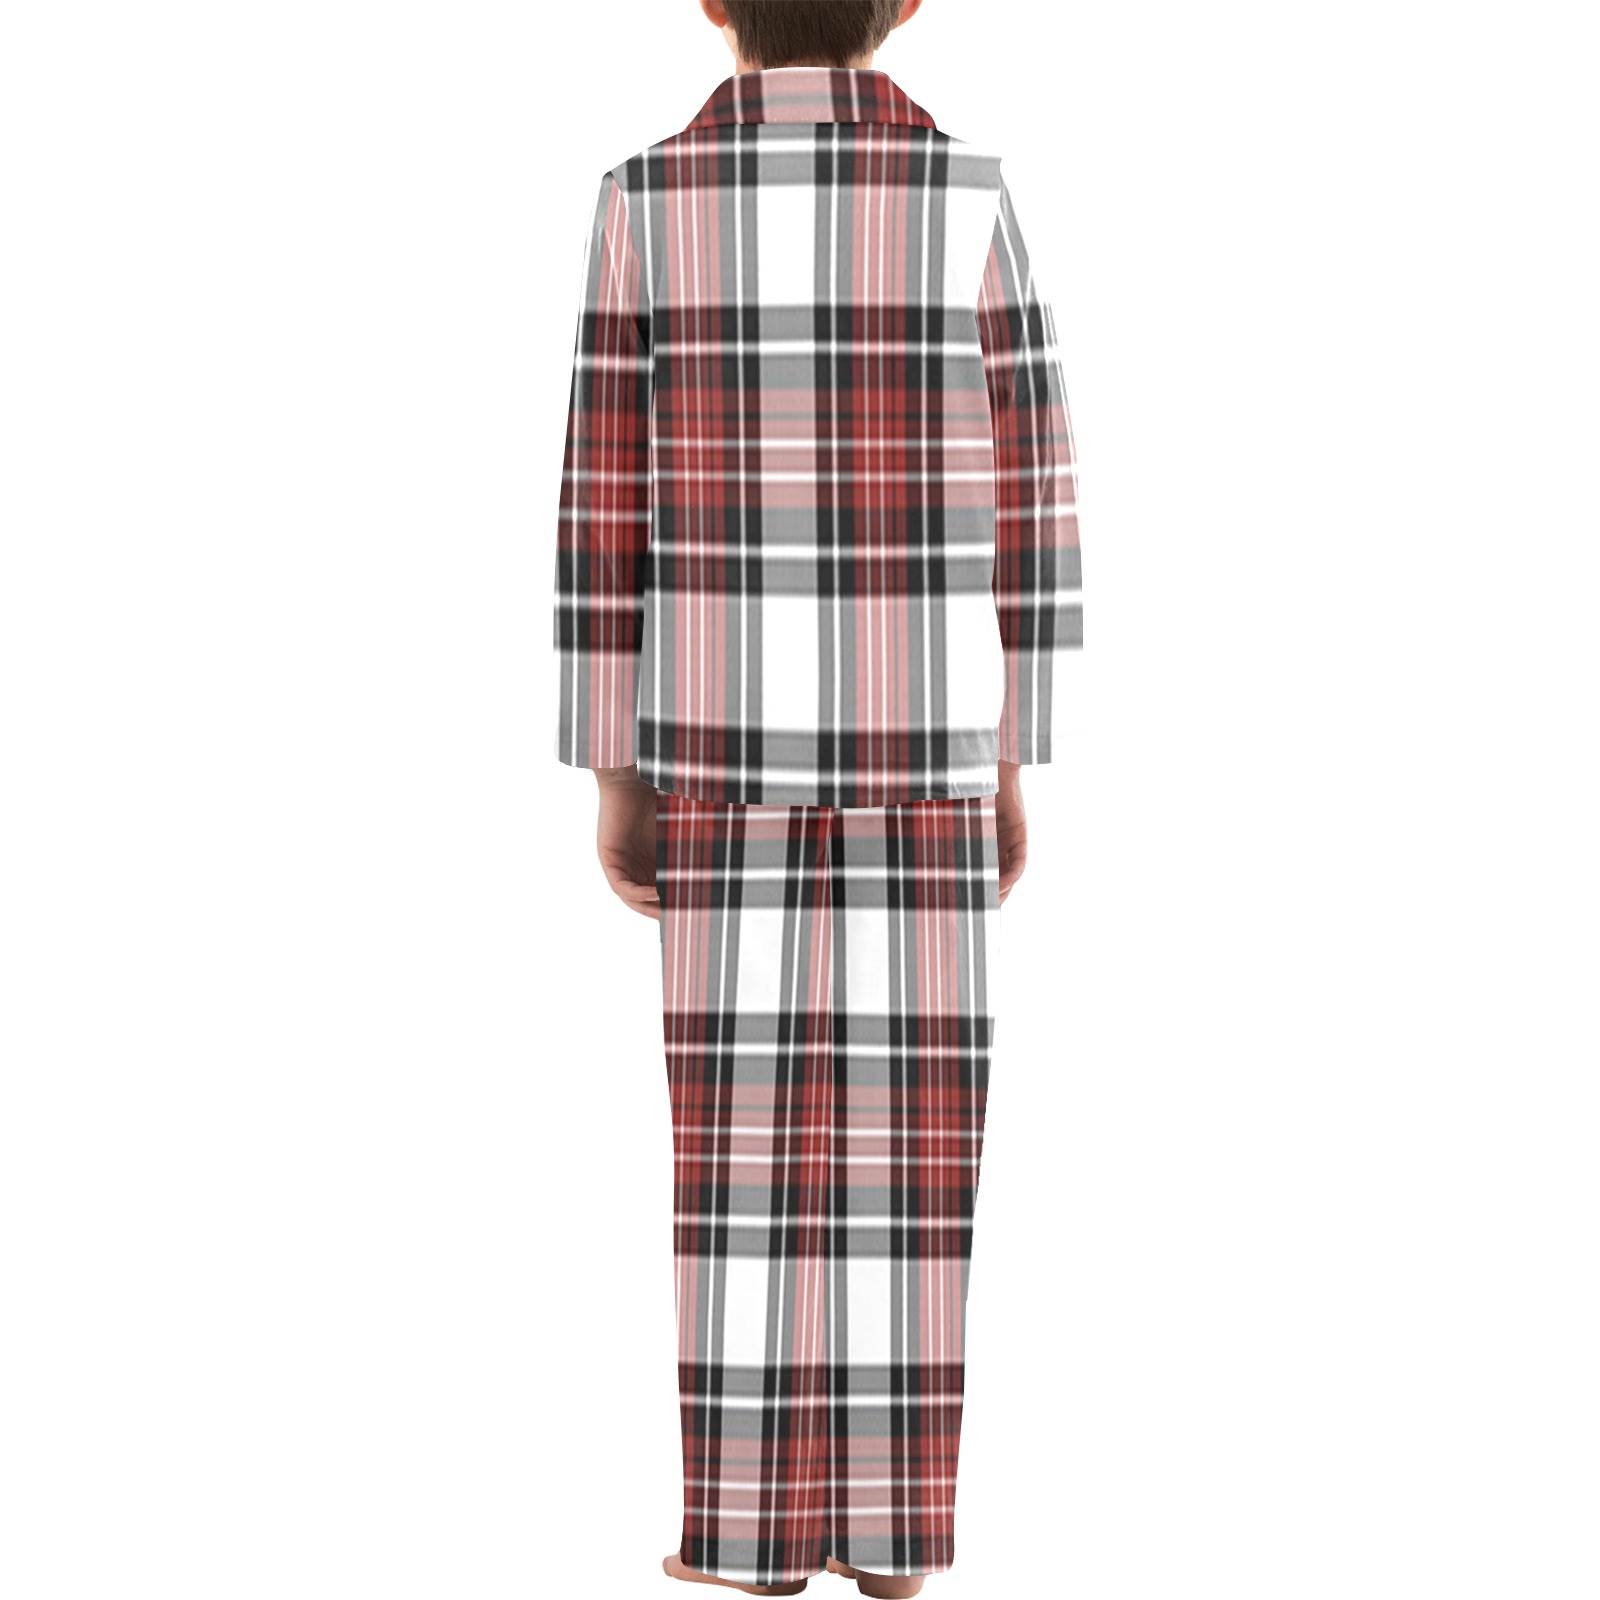 Red Black Plaid Big Boys' V-Neck Long Pajama Set